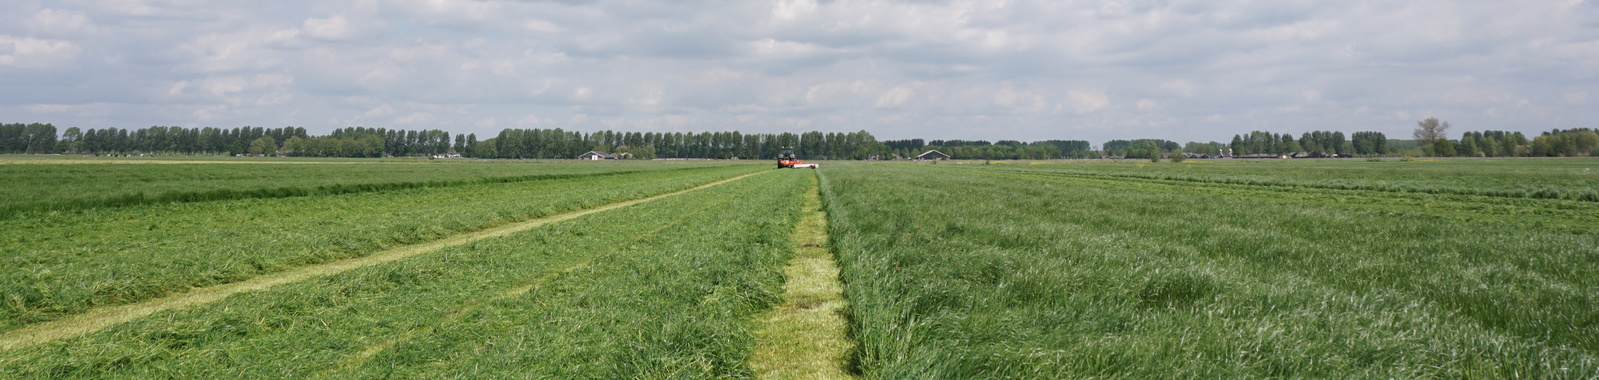 Autres pratiques agronomiques ayant une influence sur le rendement en herbe